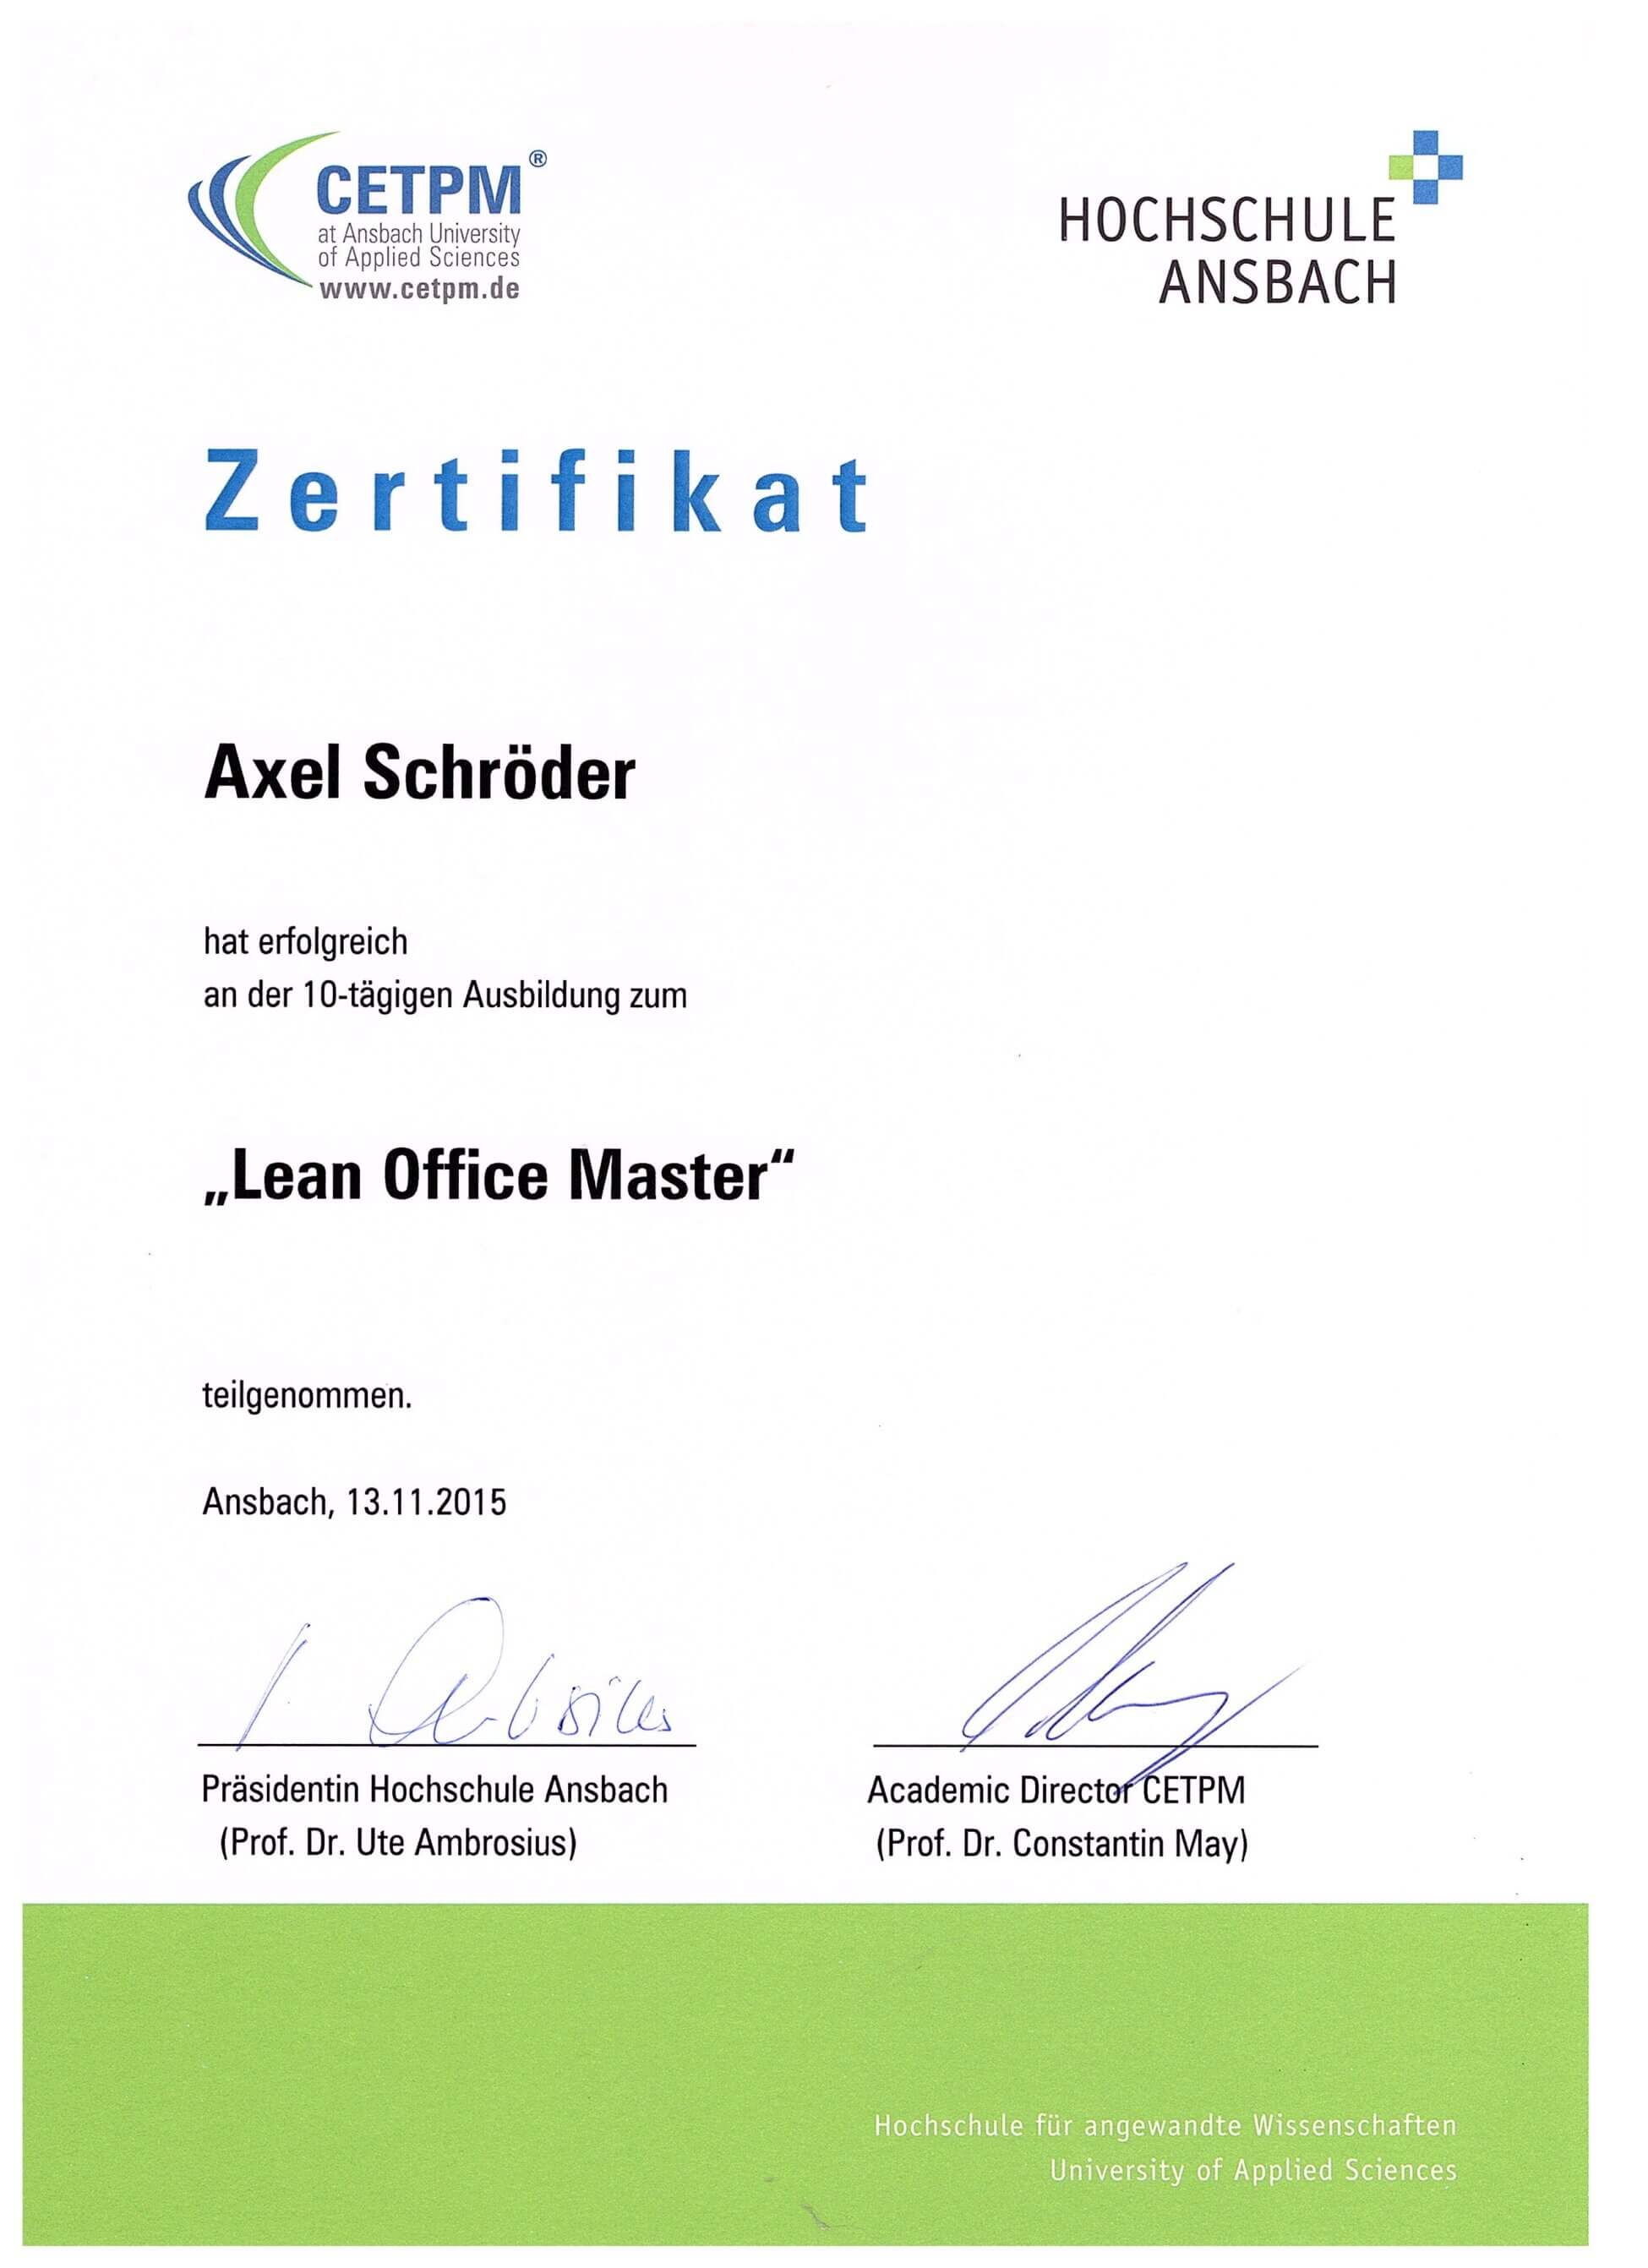 Axel Schröder ist Lean Office Master